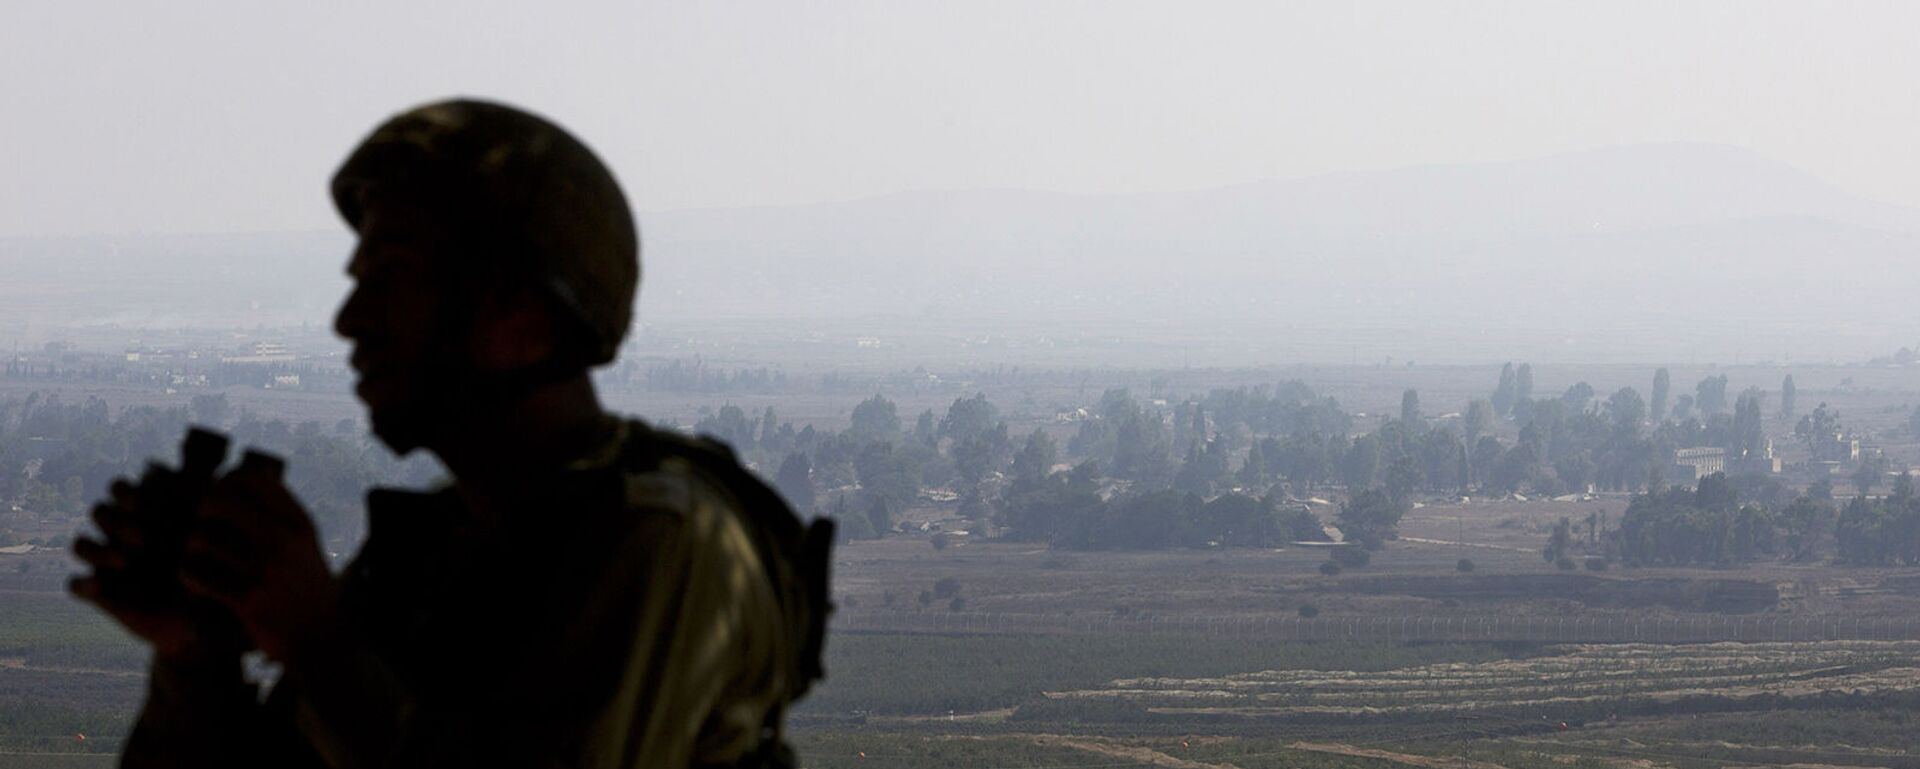 Израильский солдат наблюдает за сирийской провинцией Эль-Кунейтра из наблюдательного пункта на контролируемых Израилем Голанских высотах (1 сентября 2014). - Sputnik Армения, 1920, 05.03.2021